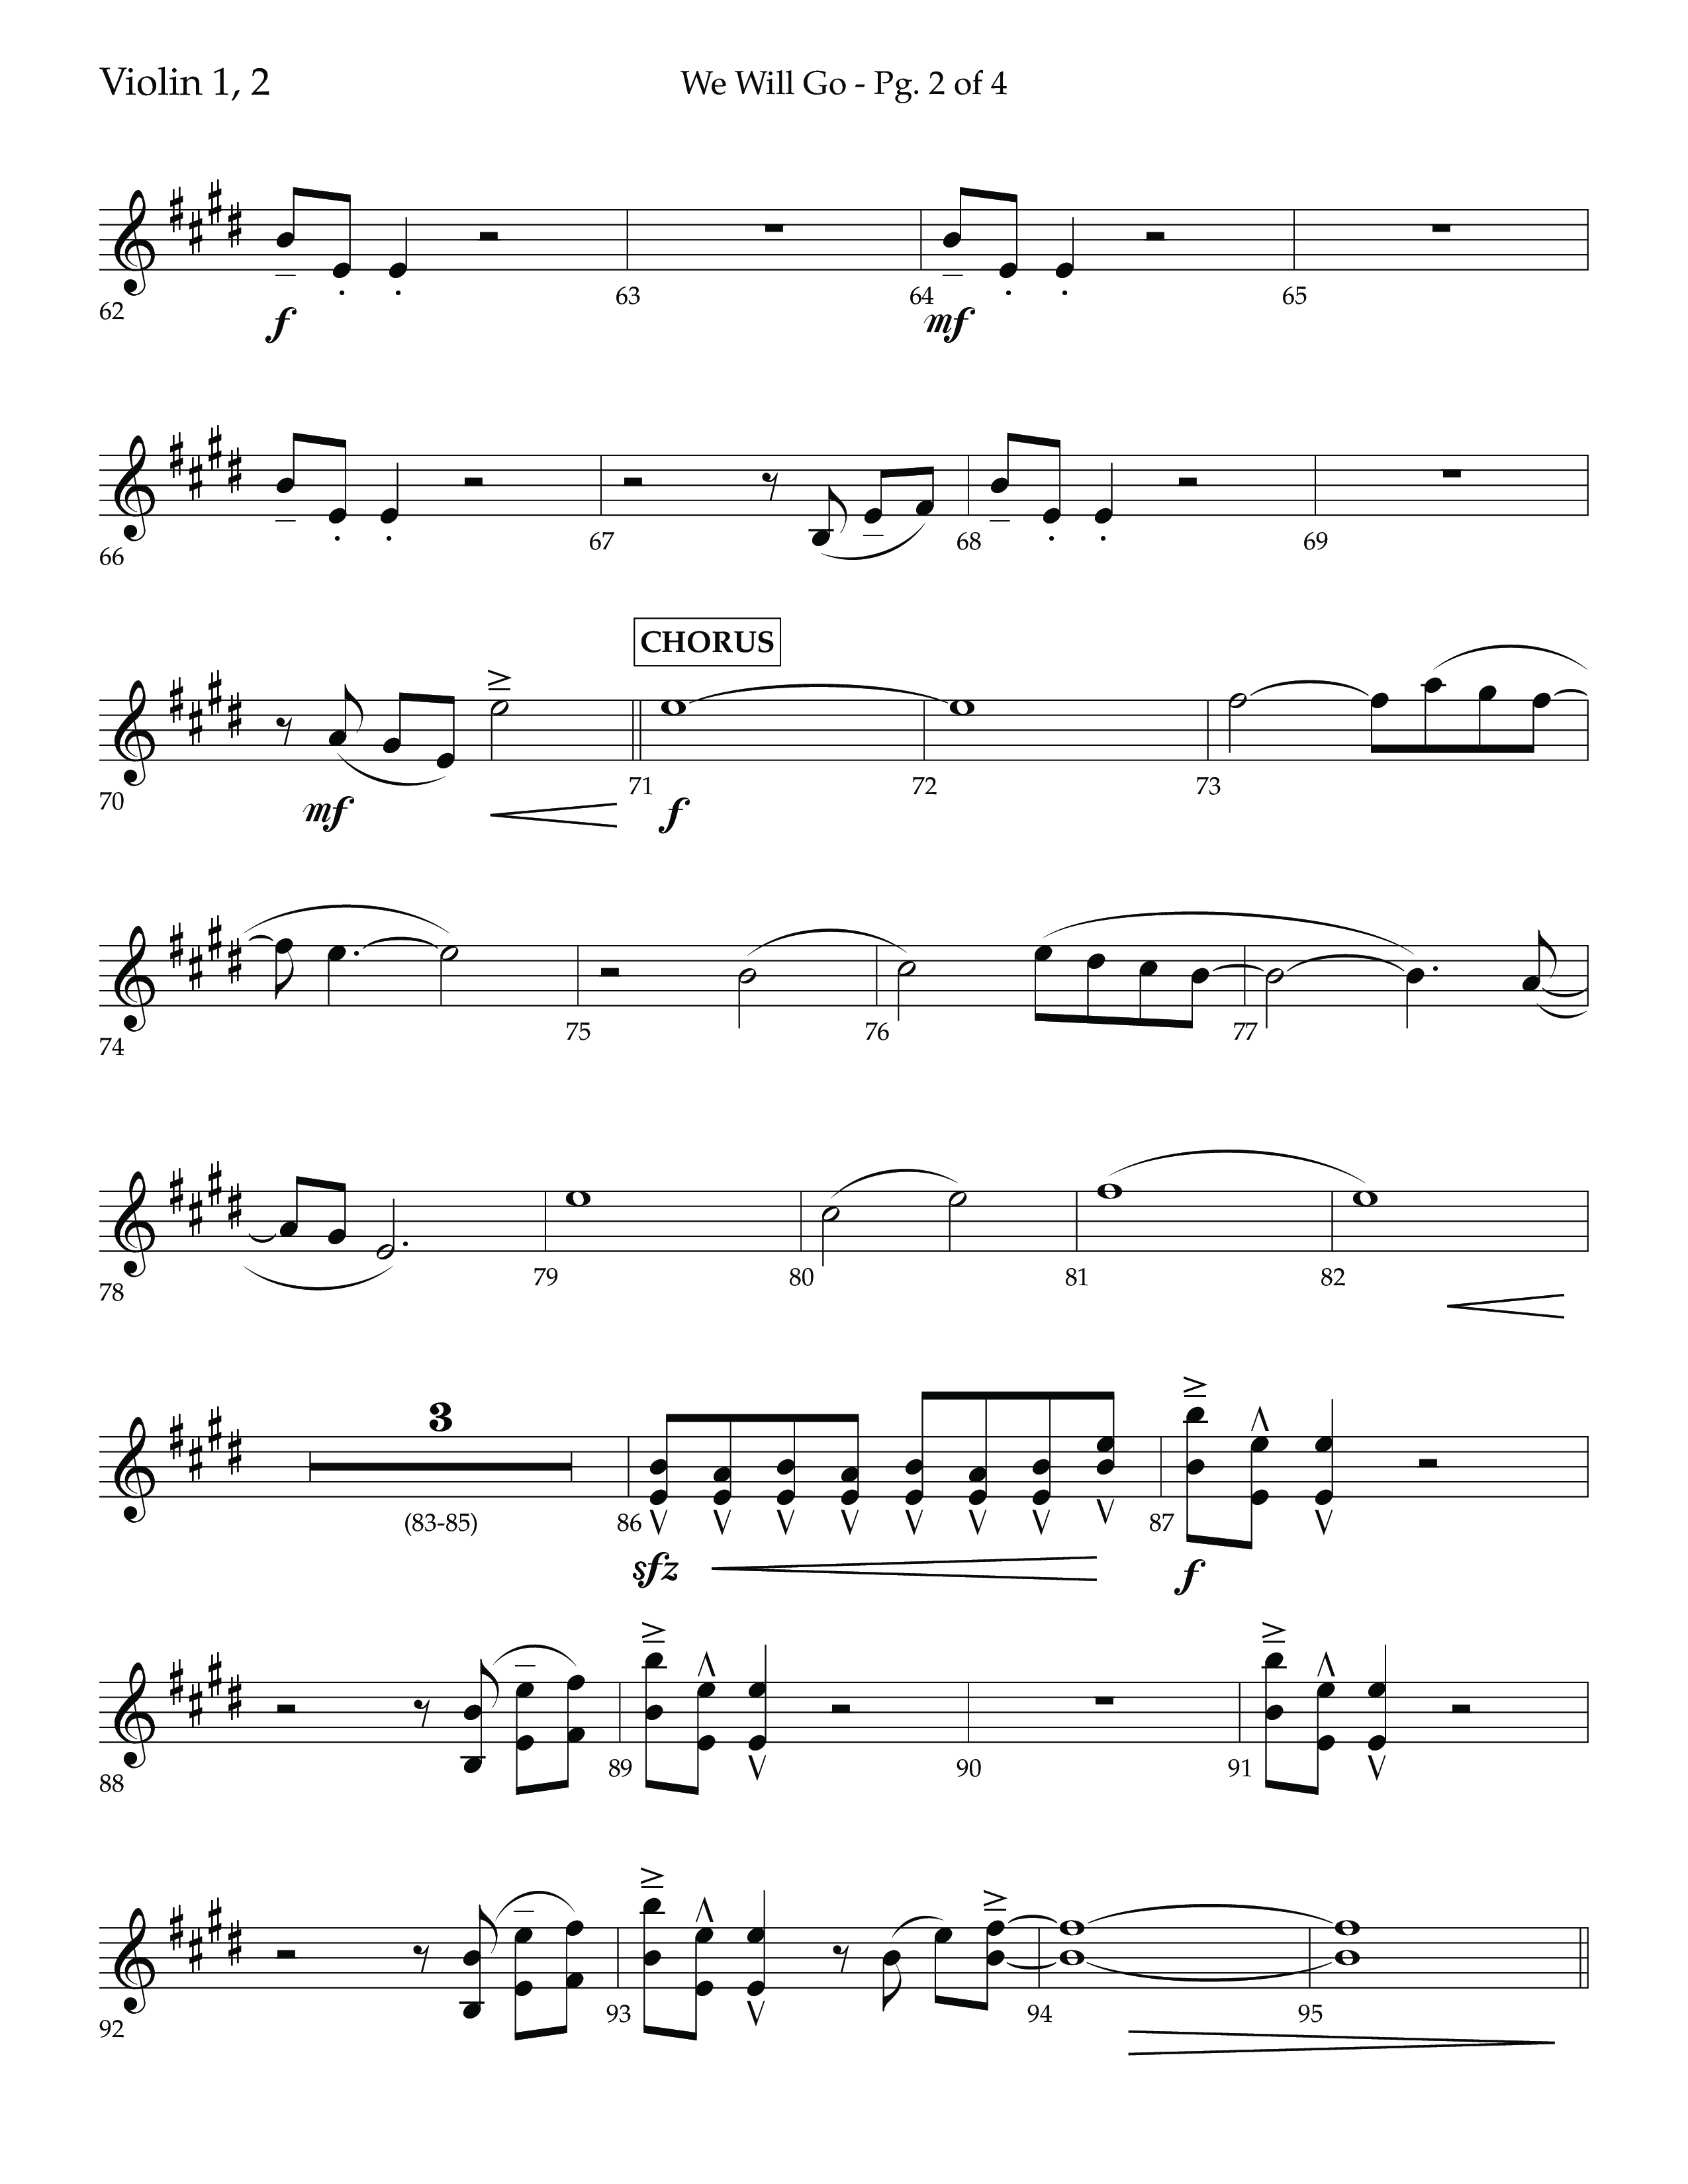 We Will Go (Choral Anthem SATB) Violin 1/2 (Lifeway Choral / Arr. Cliff Duren)